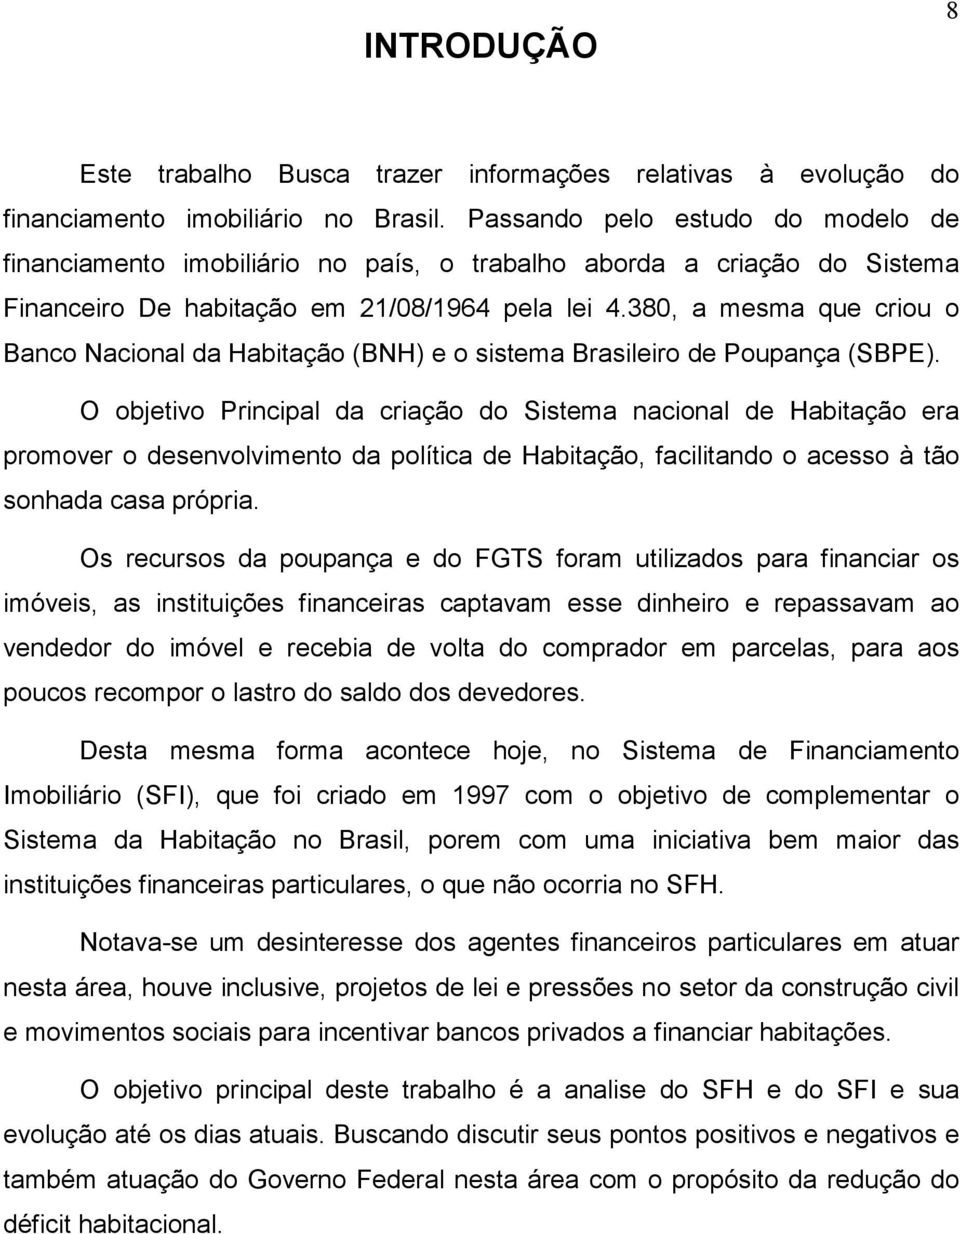 380, a mesma que criou o Banco Nacional da Habitação (BNH) e o sistema Brasileiro de Poupança (SBPE).